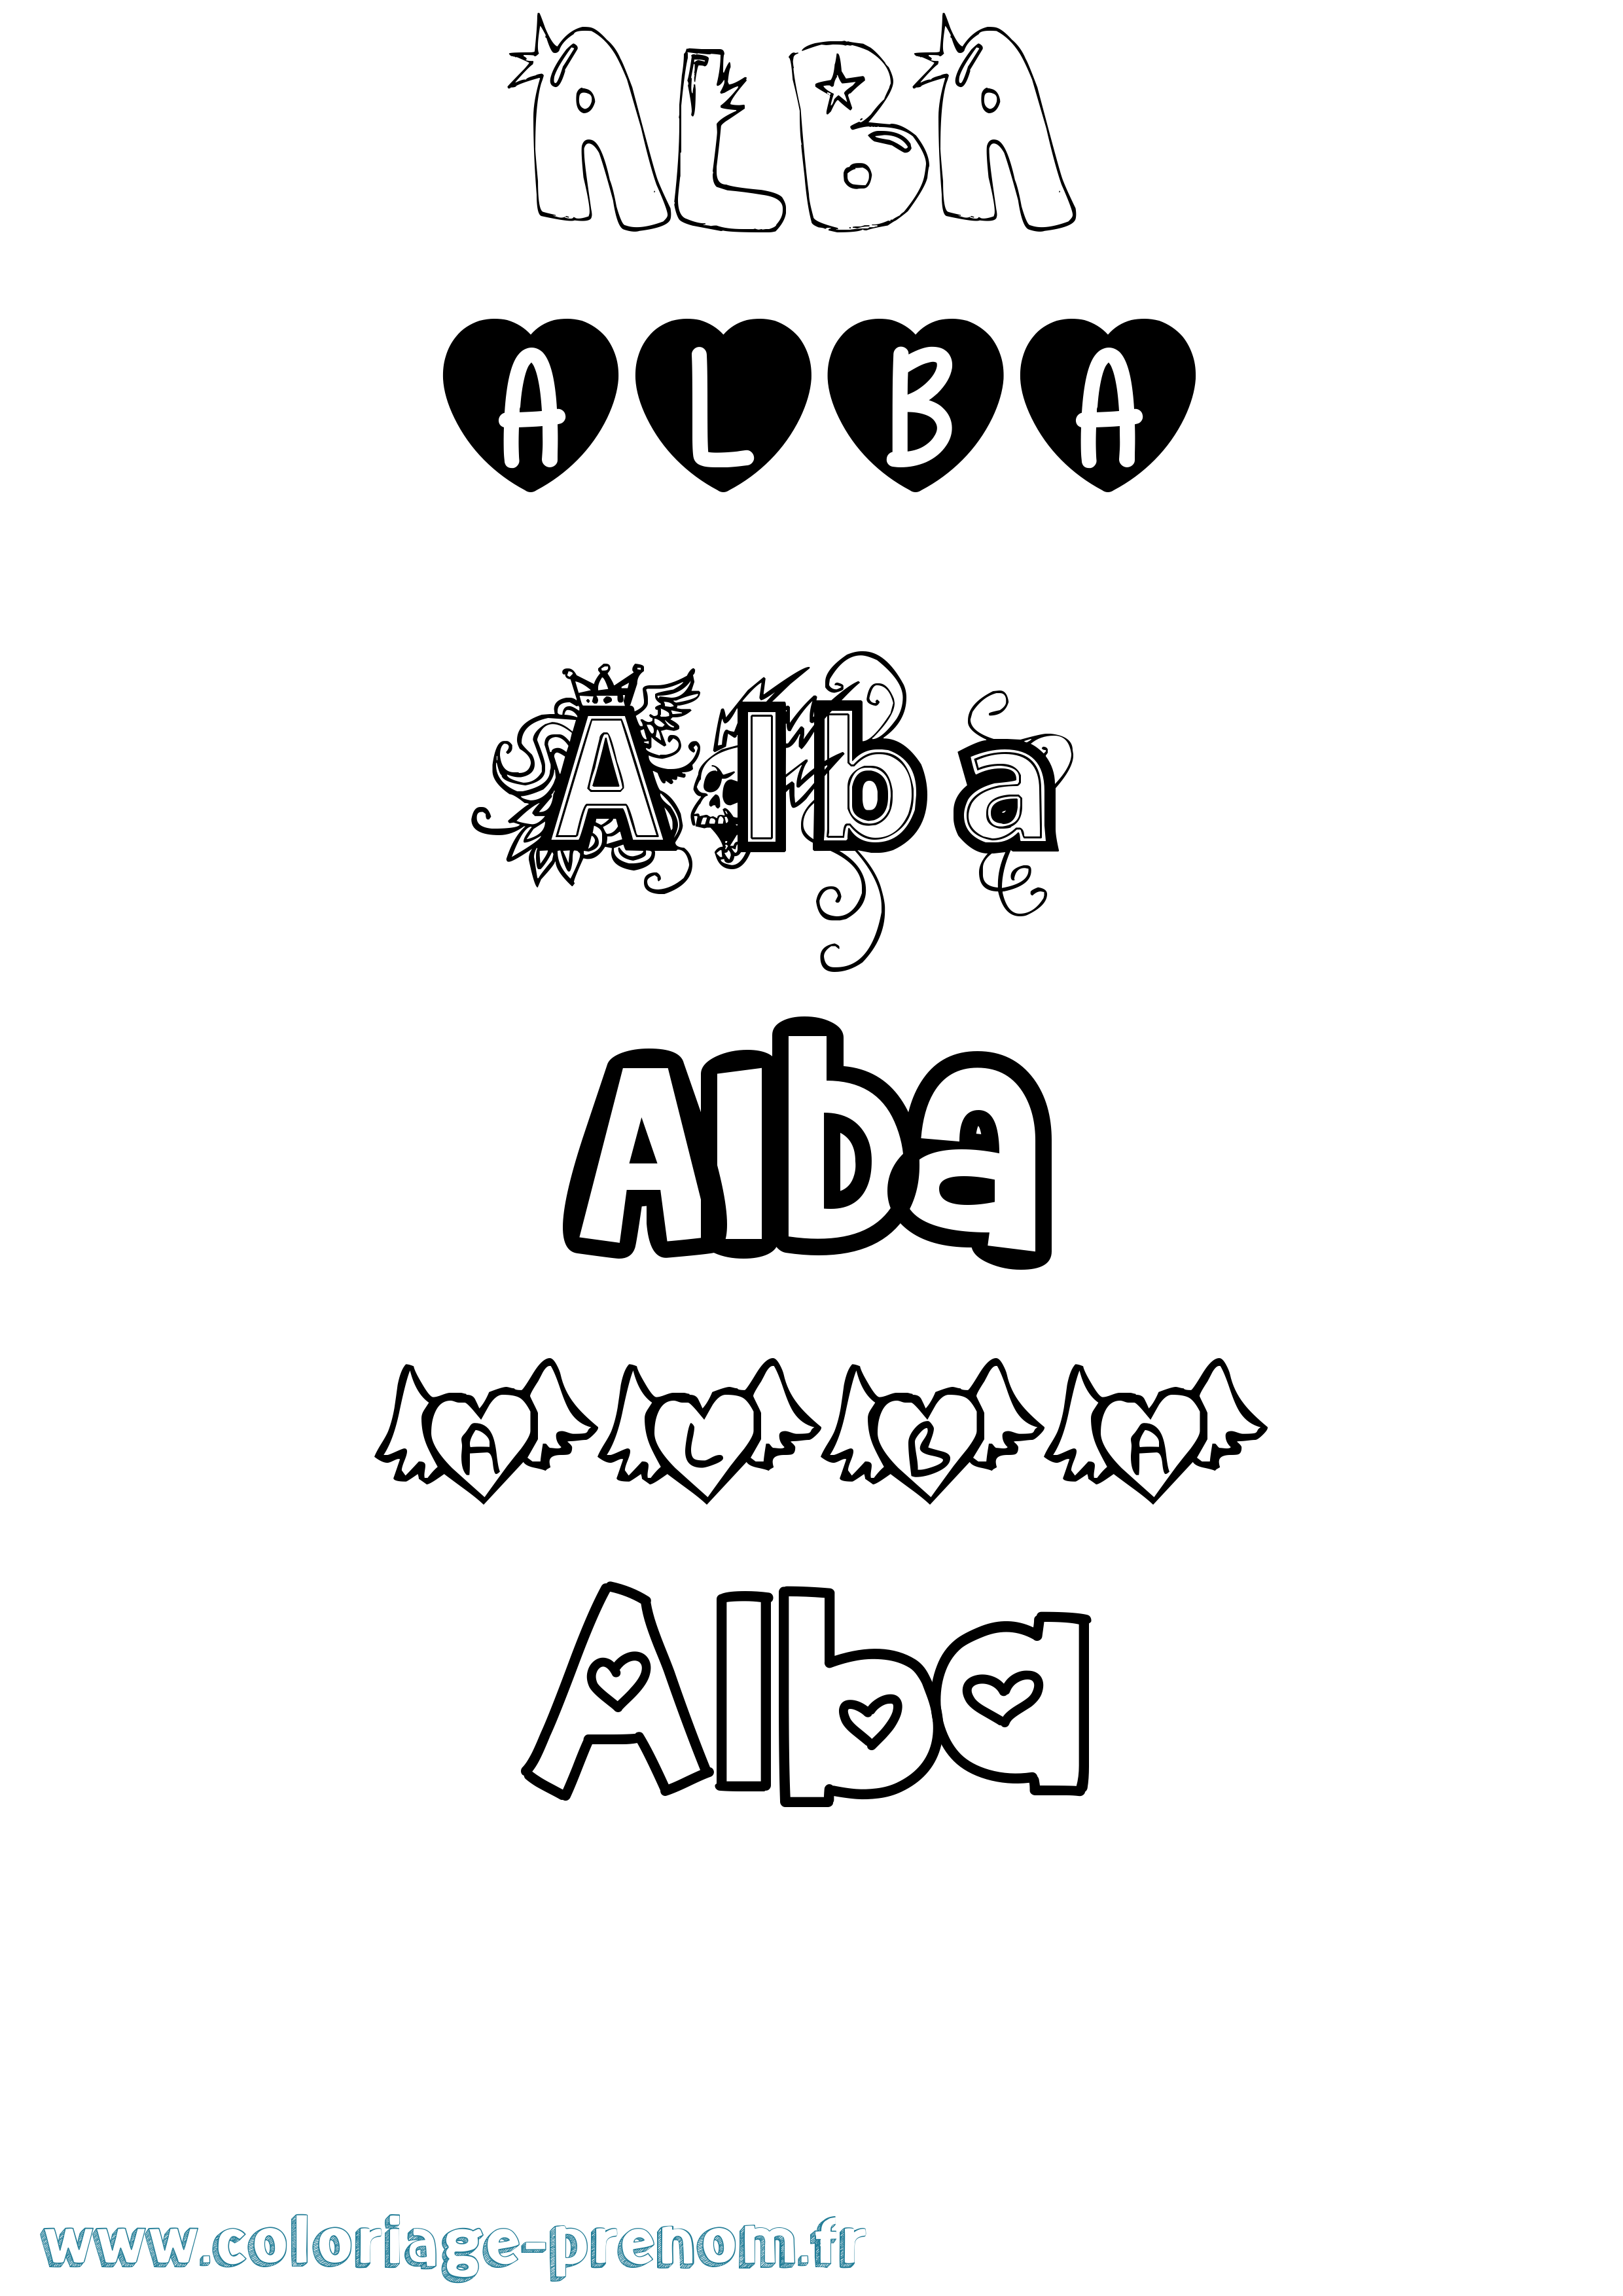 Coloriage prénom Alba Girly